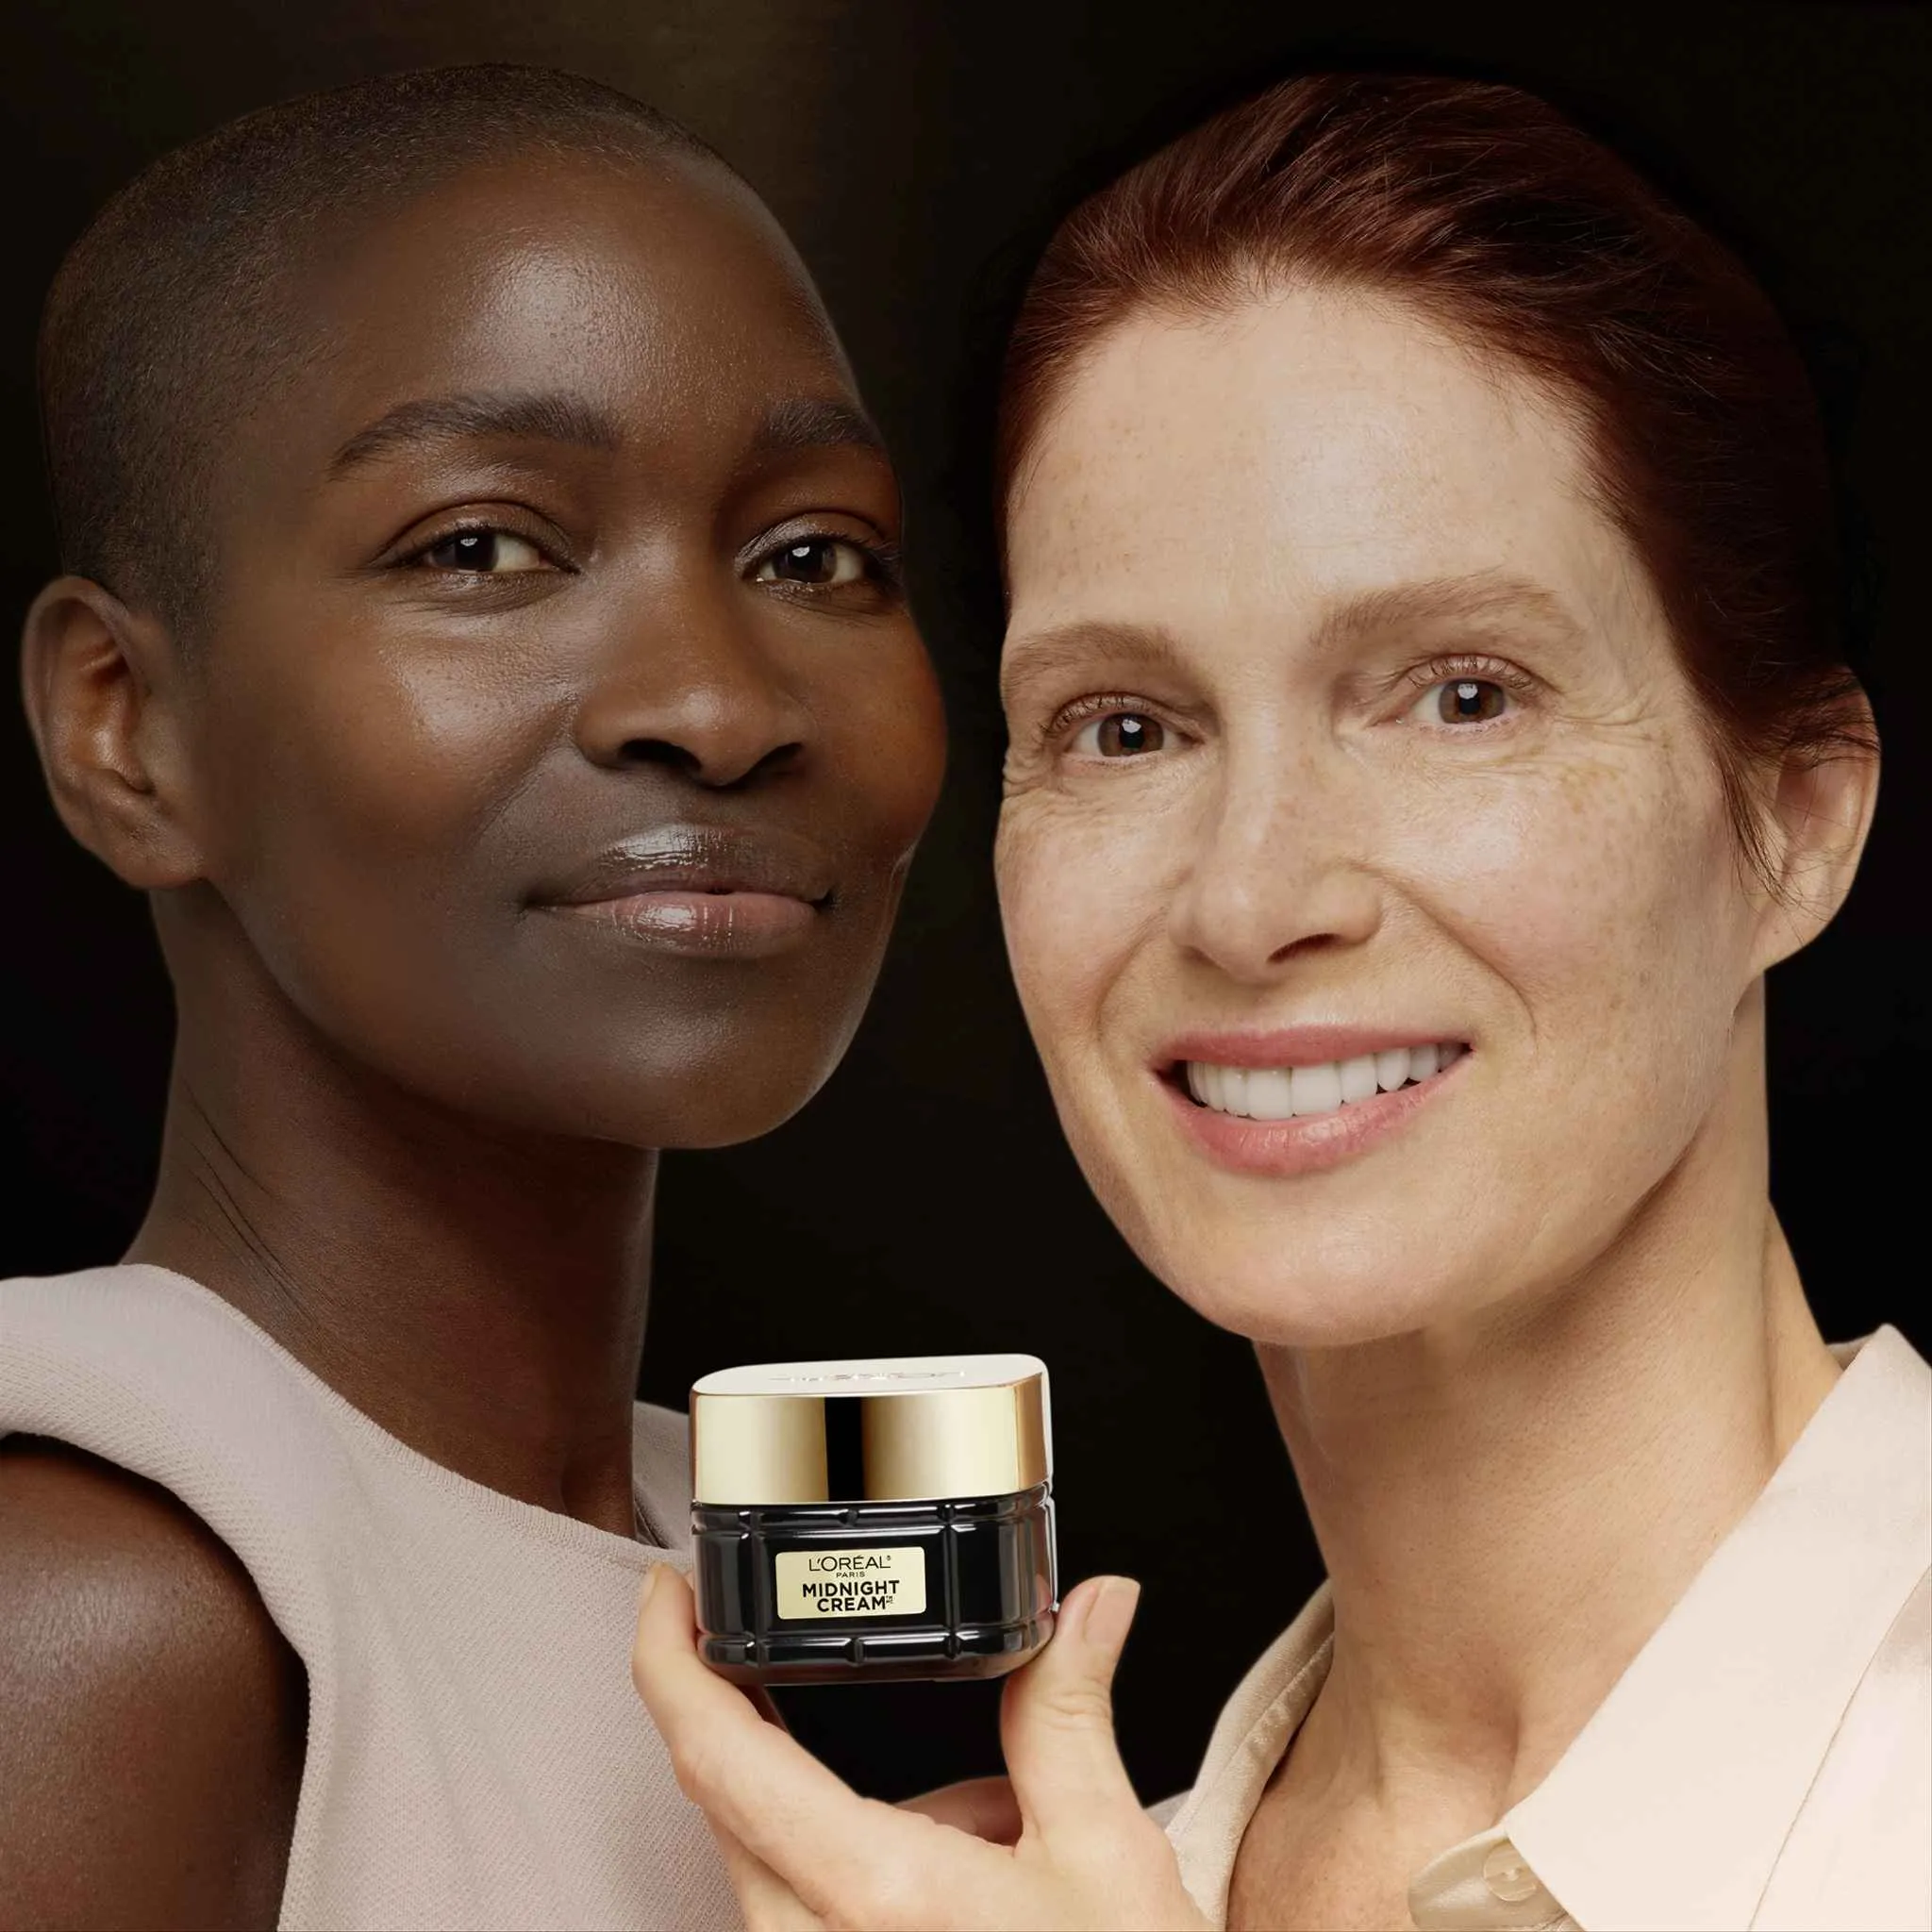 L'Oréal Paris Age Perfect Cell Renew Midnight krém 1×50 ml, krém